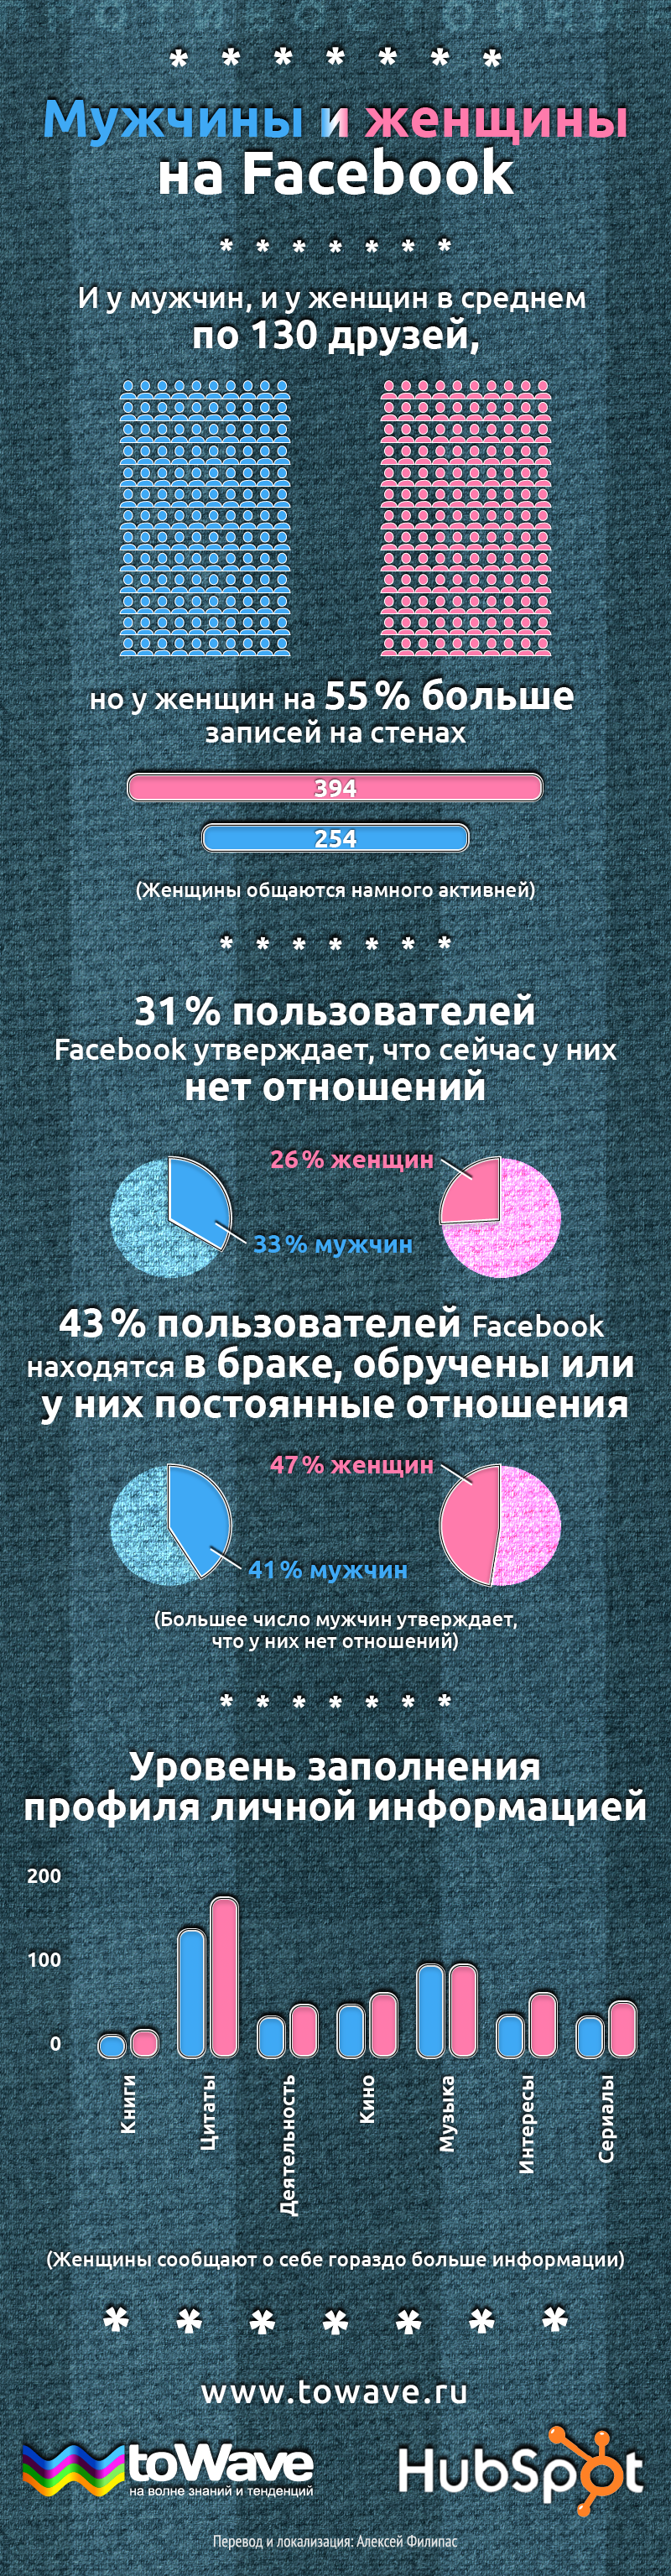 Инфографика: мужчины и женщины в Facebook